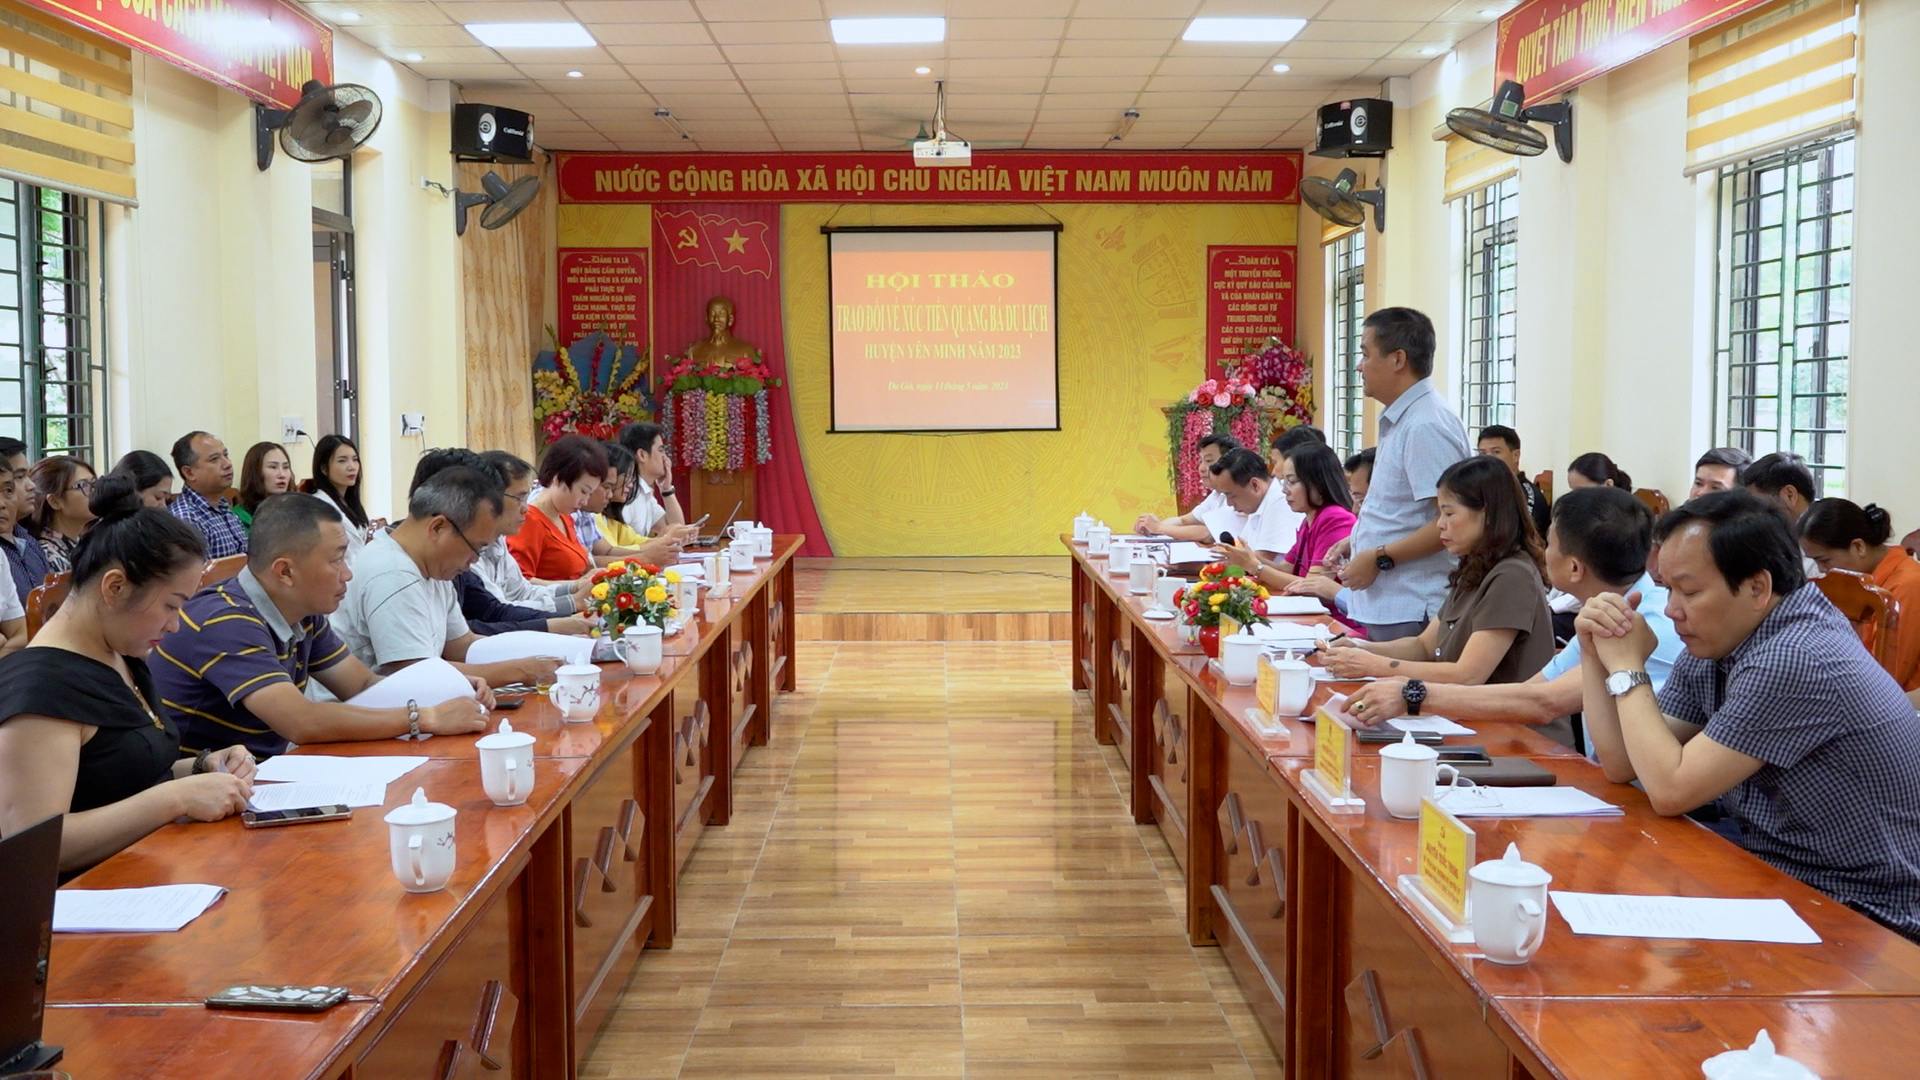 Yên Minh tổ chức hội nghị trao đổi xúc tiến, quảng bá du lịch